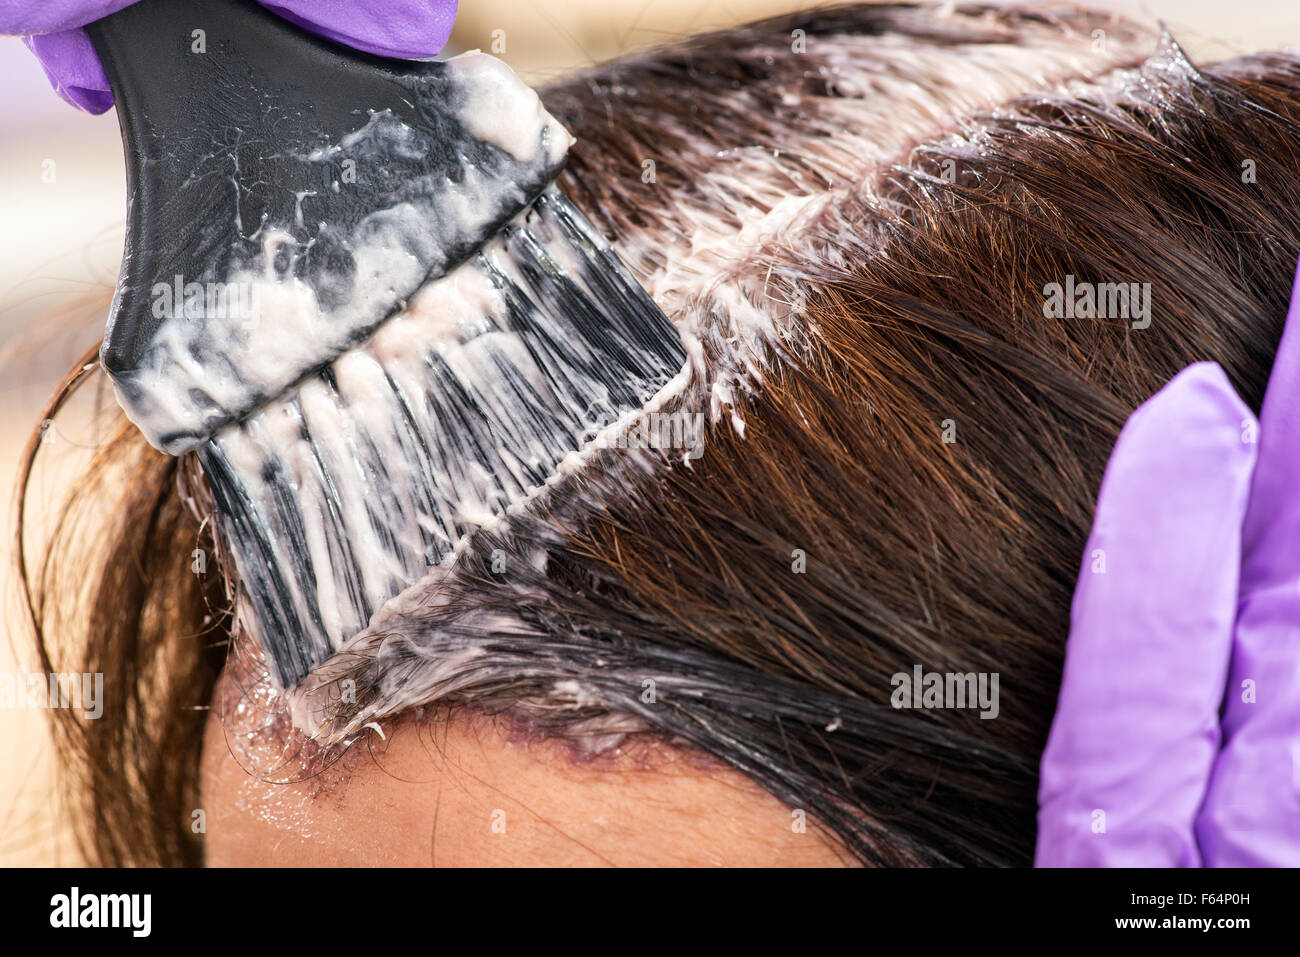 Peluquería aplicando un tinte de color para el cabello marrón de una clienta en un salón con un cepillo aplicador, Vista cercana Foto de stock